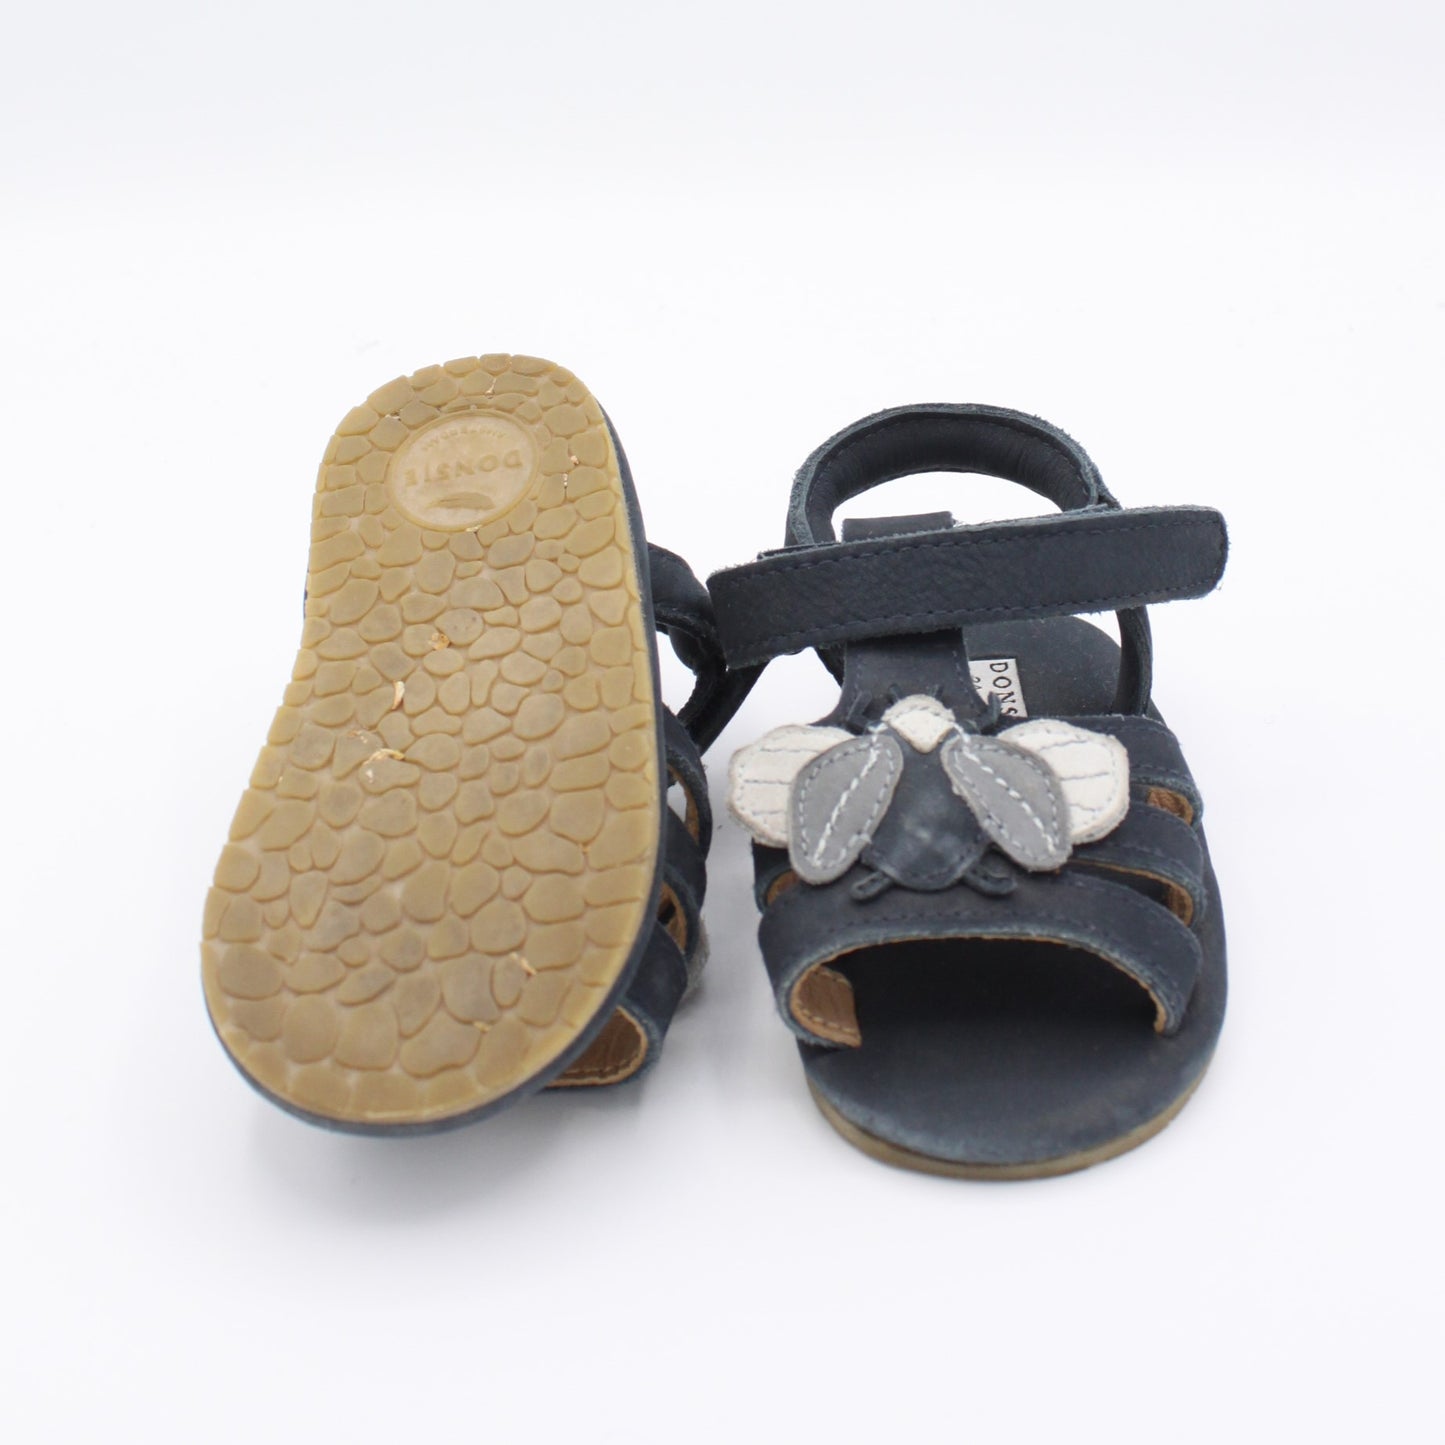 Pre-loved Sandals (EU21/22)